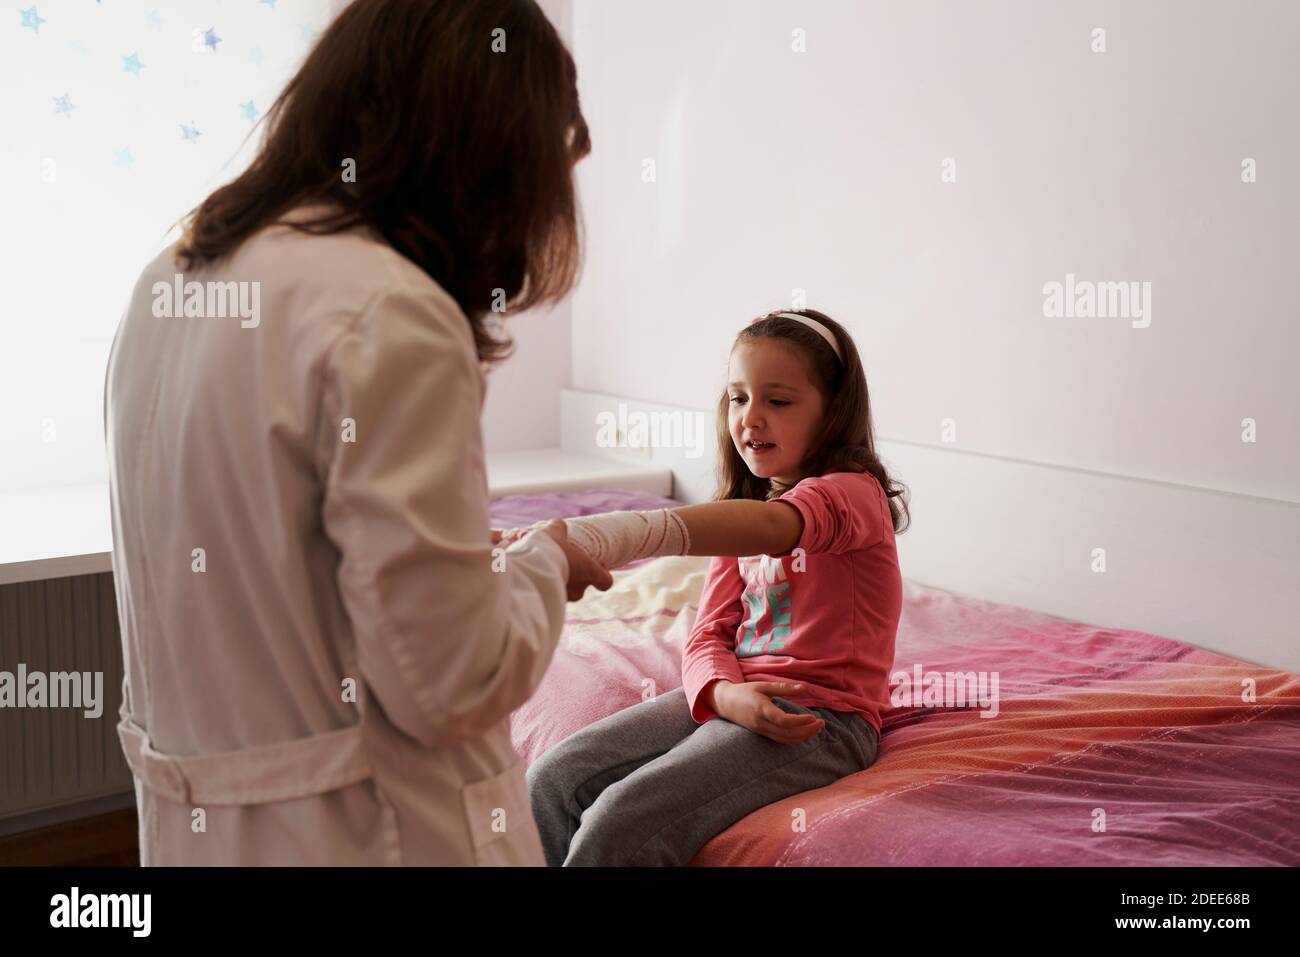 Dottore femmina che bendava il braccio di una bambina nella sua stanza. Concetto medico domestico Foto Stock